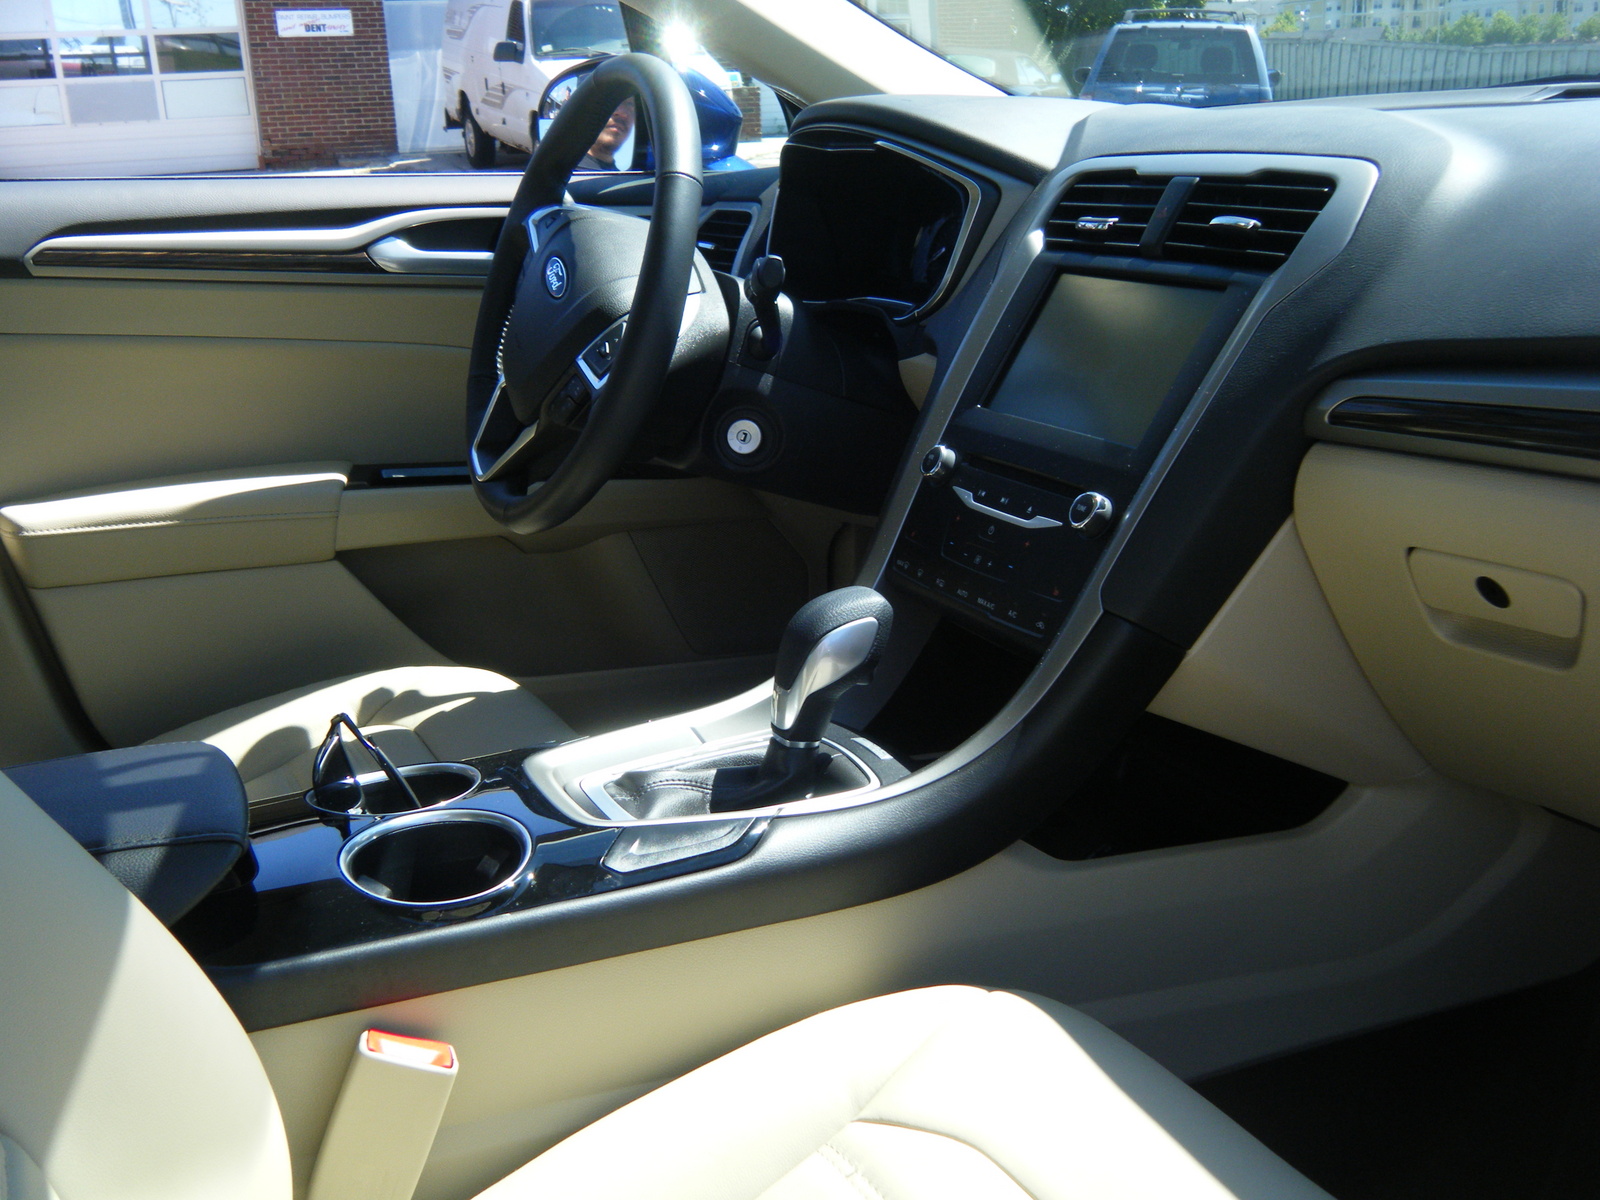 2013 Ford Fusion - Interior Pictures - CarGurus